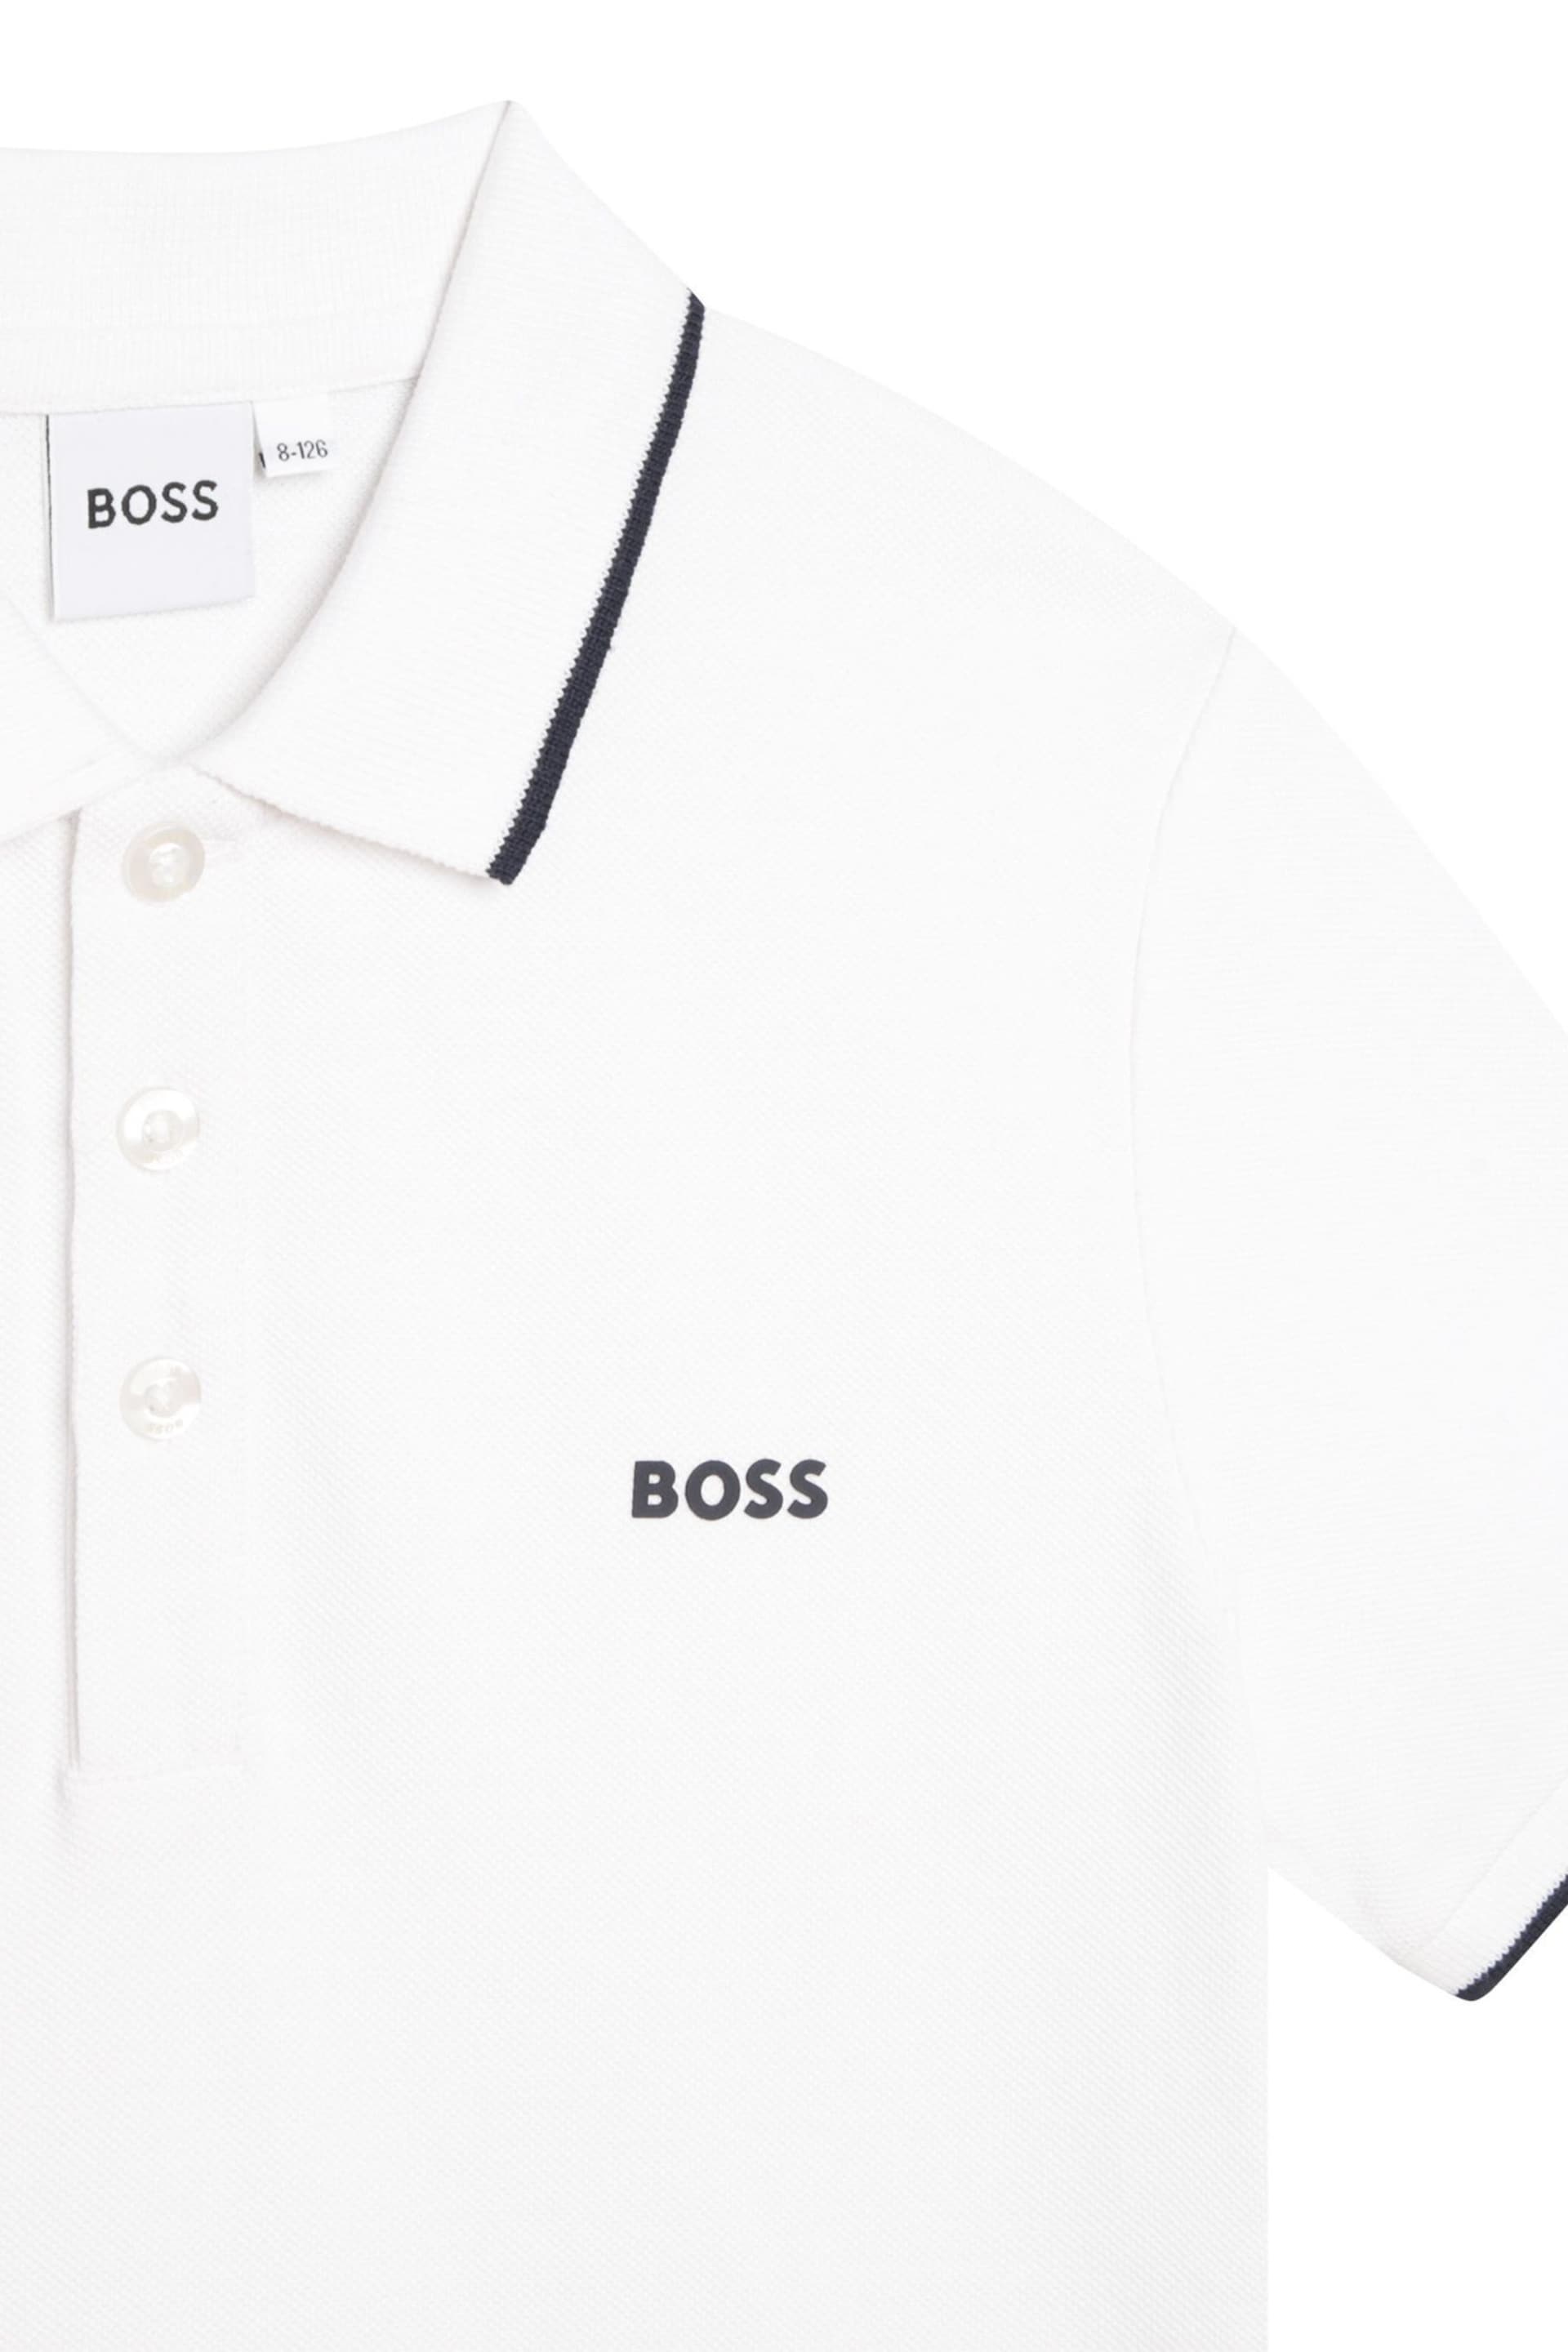 BOSS White Short Sleeved Logo Polo Shirt - Image 6 of 6